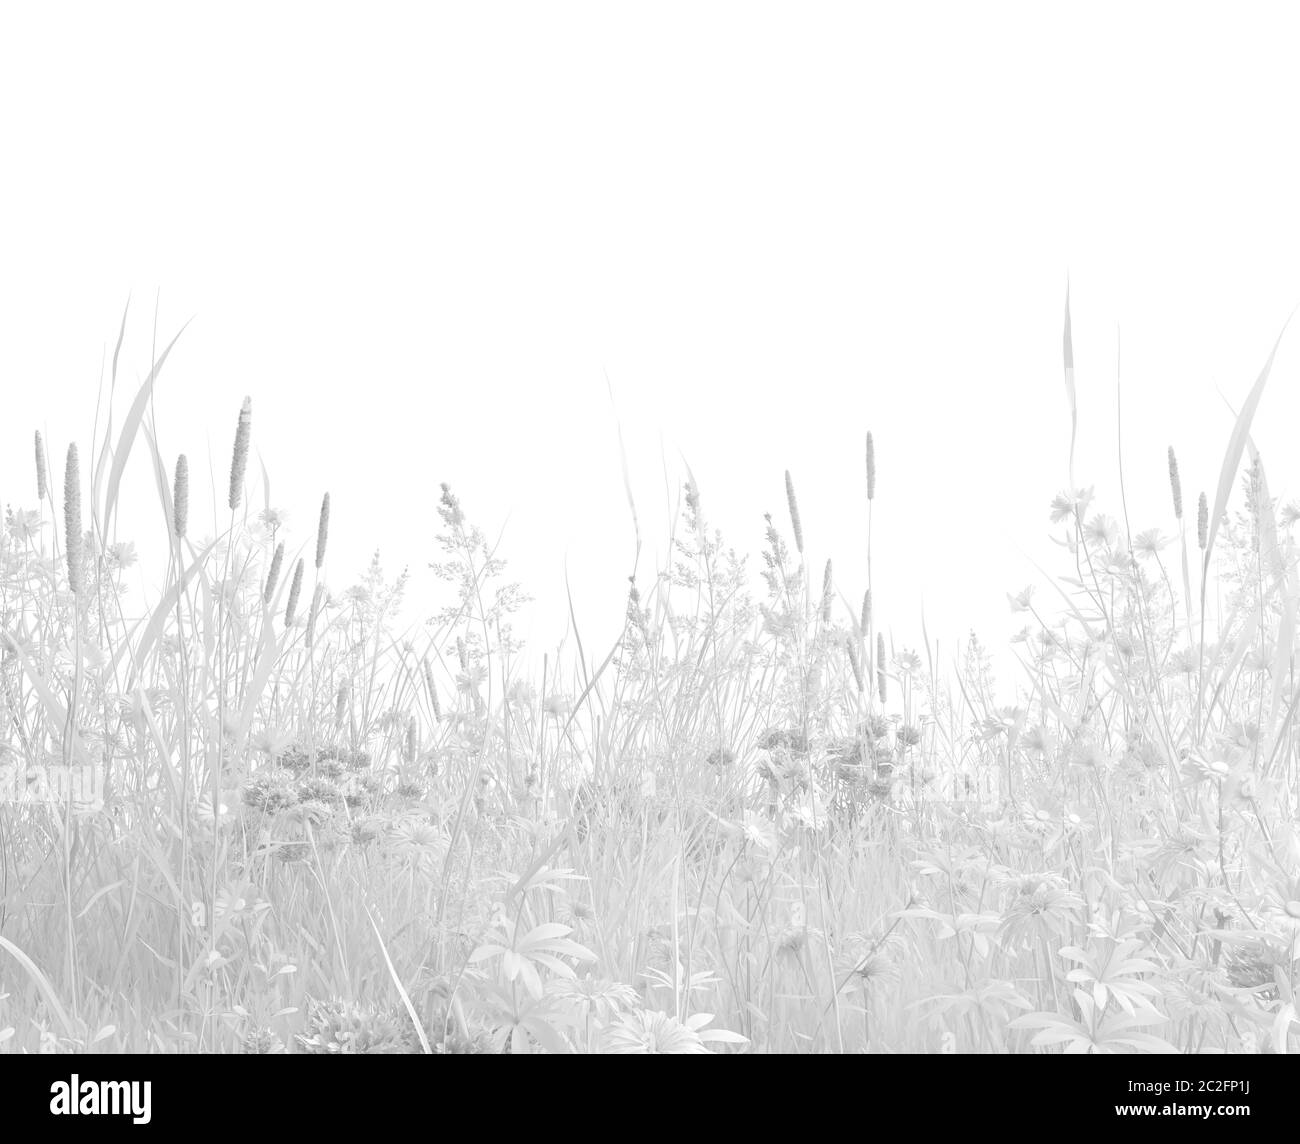 Erba selvatica incolore e fiori selvatici su sfondo bianco. Raccolta di erbe in bianco monocromatico. Immagine con spazio per la copia. Rendering 3D Foto Stock